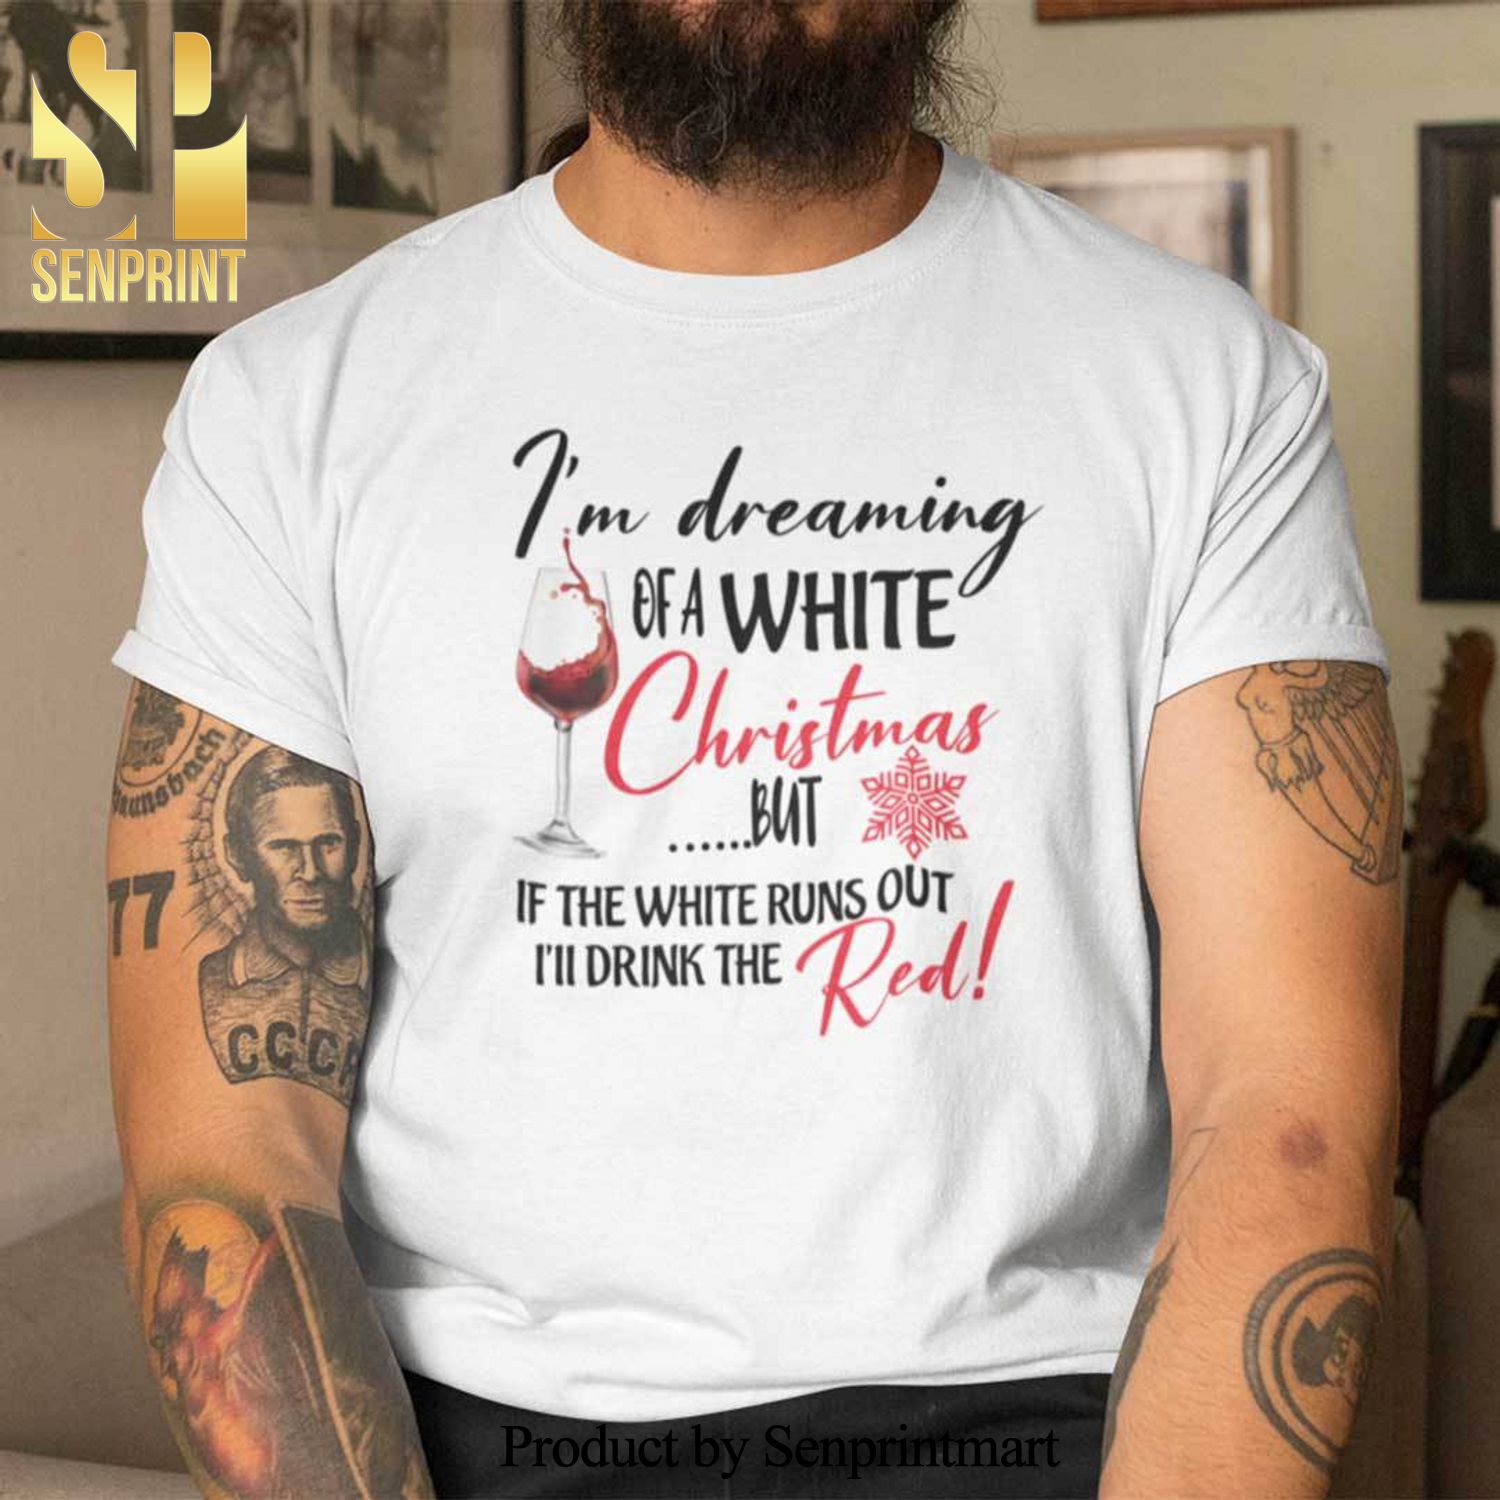 Christmas Wine Glass Christmas Gifts Shirt I’m Dreaming Of A White Christmas